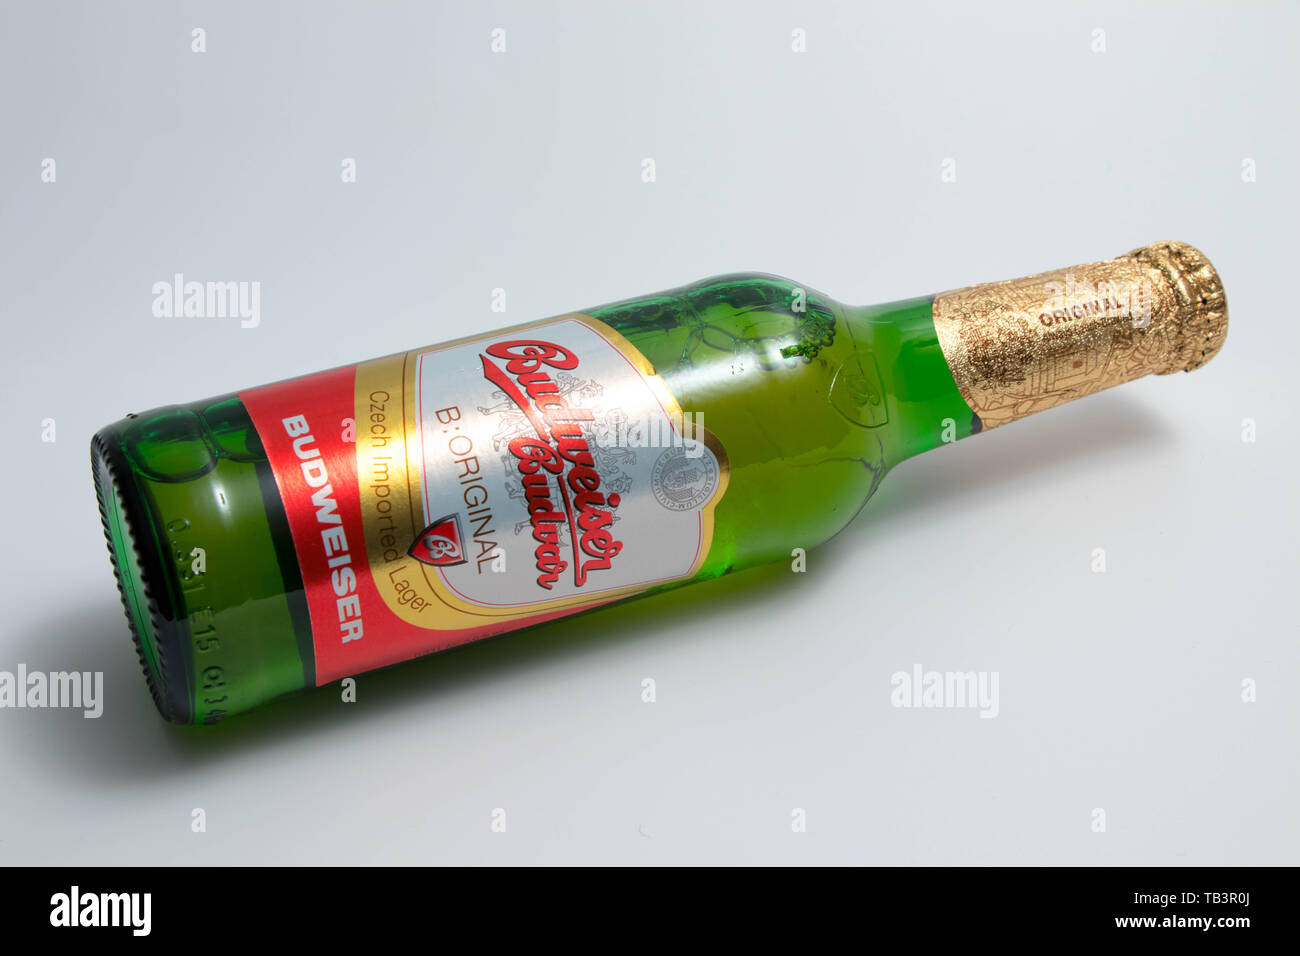 Budweiser grüne Flasche amerikanisches Bier Stockfotografie - Alamy